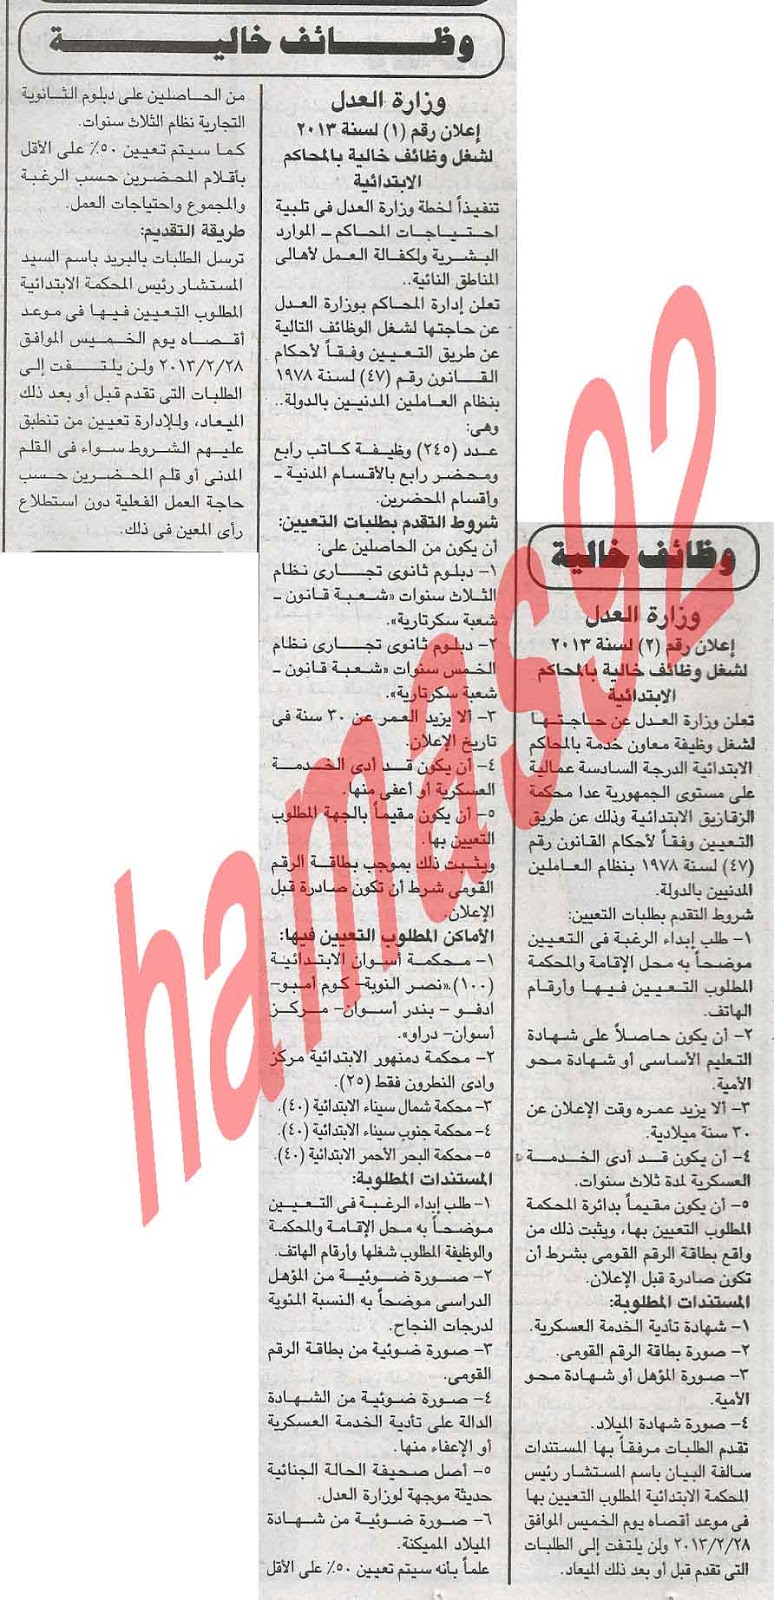 اعلان وظائف جريدة الجمهورية المصرية السبت 9/2/2013 (وظائف وزارة العدل) 